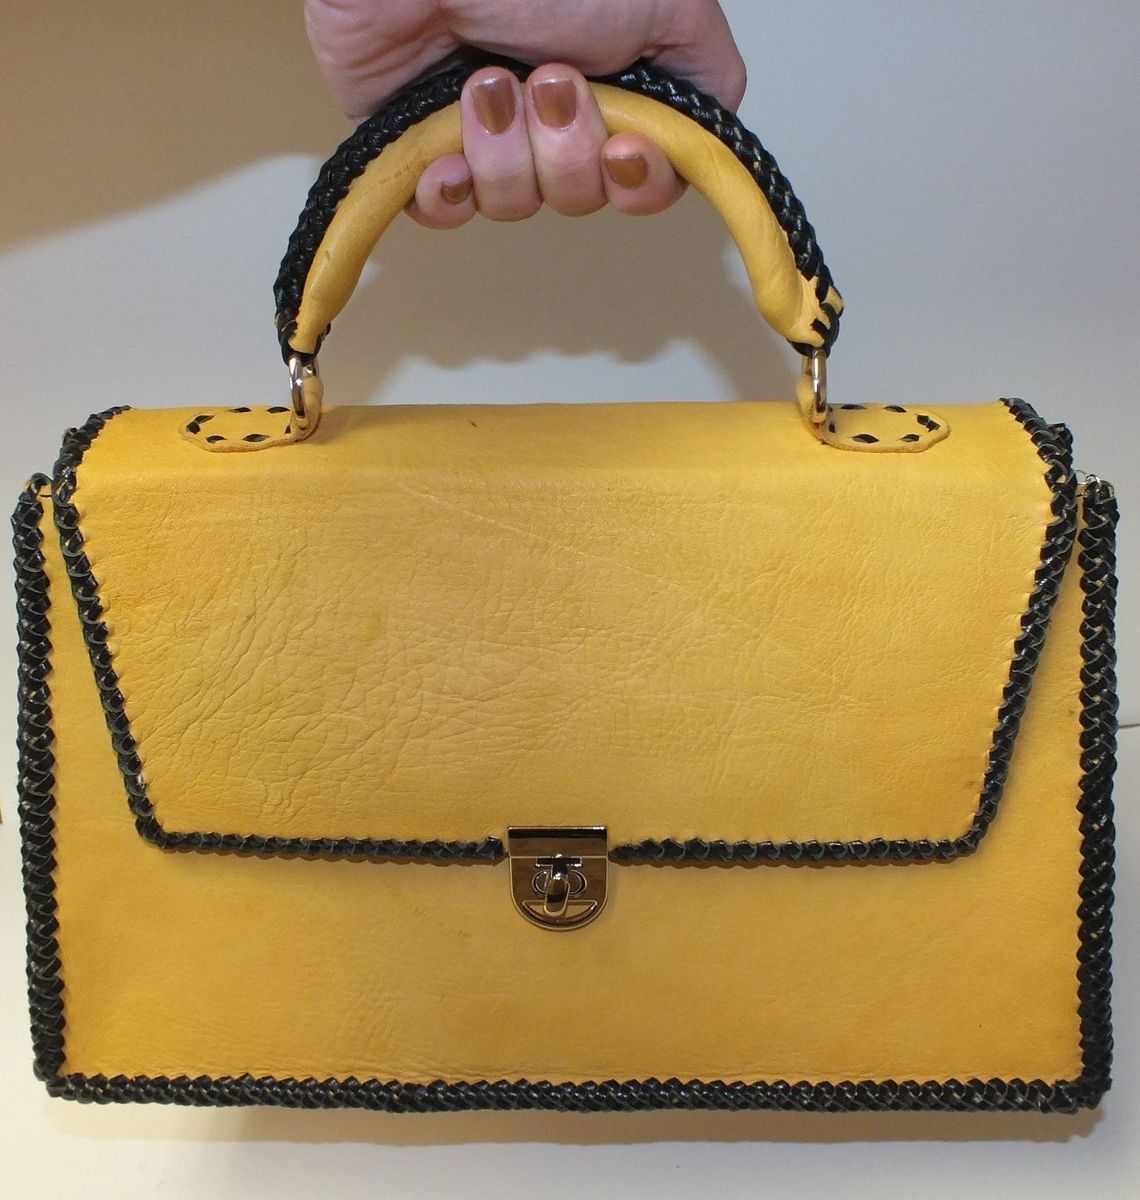 Handmade Designer Handbag by Blue Duck Creations | CustomMade.com